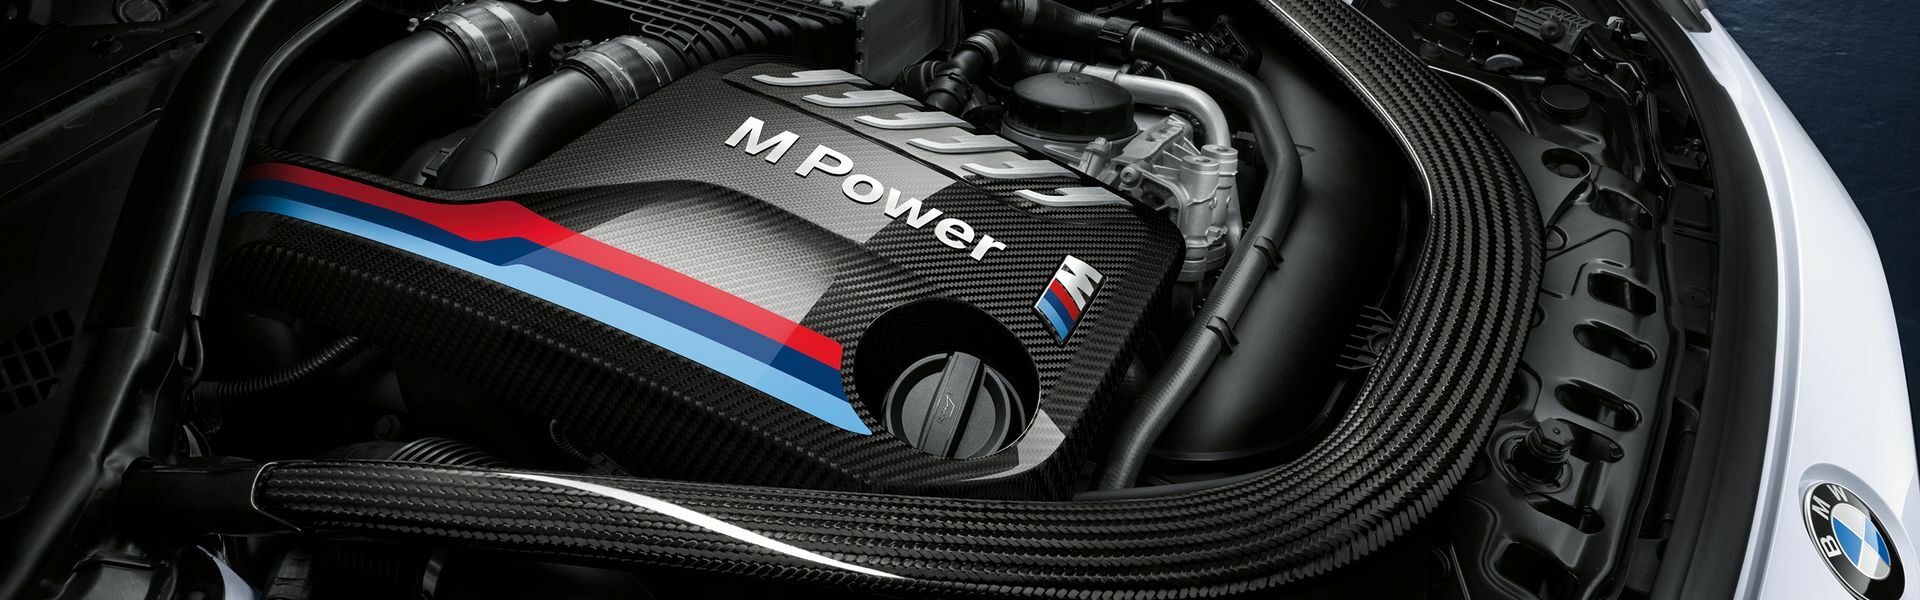 Zvýšení výkonu/ Softwarové úpravy/ Drobné performance díly pro automobil BMW M5 E60, E61